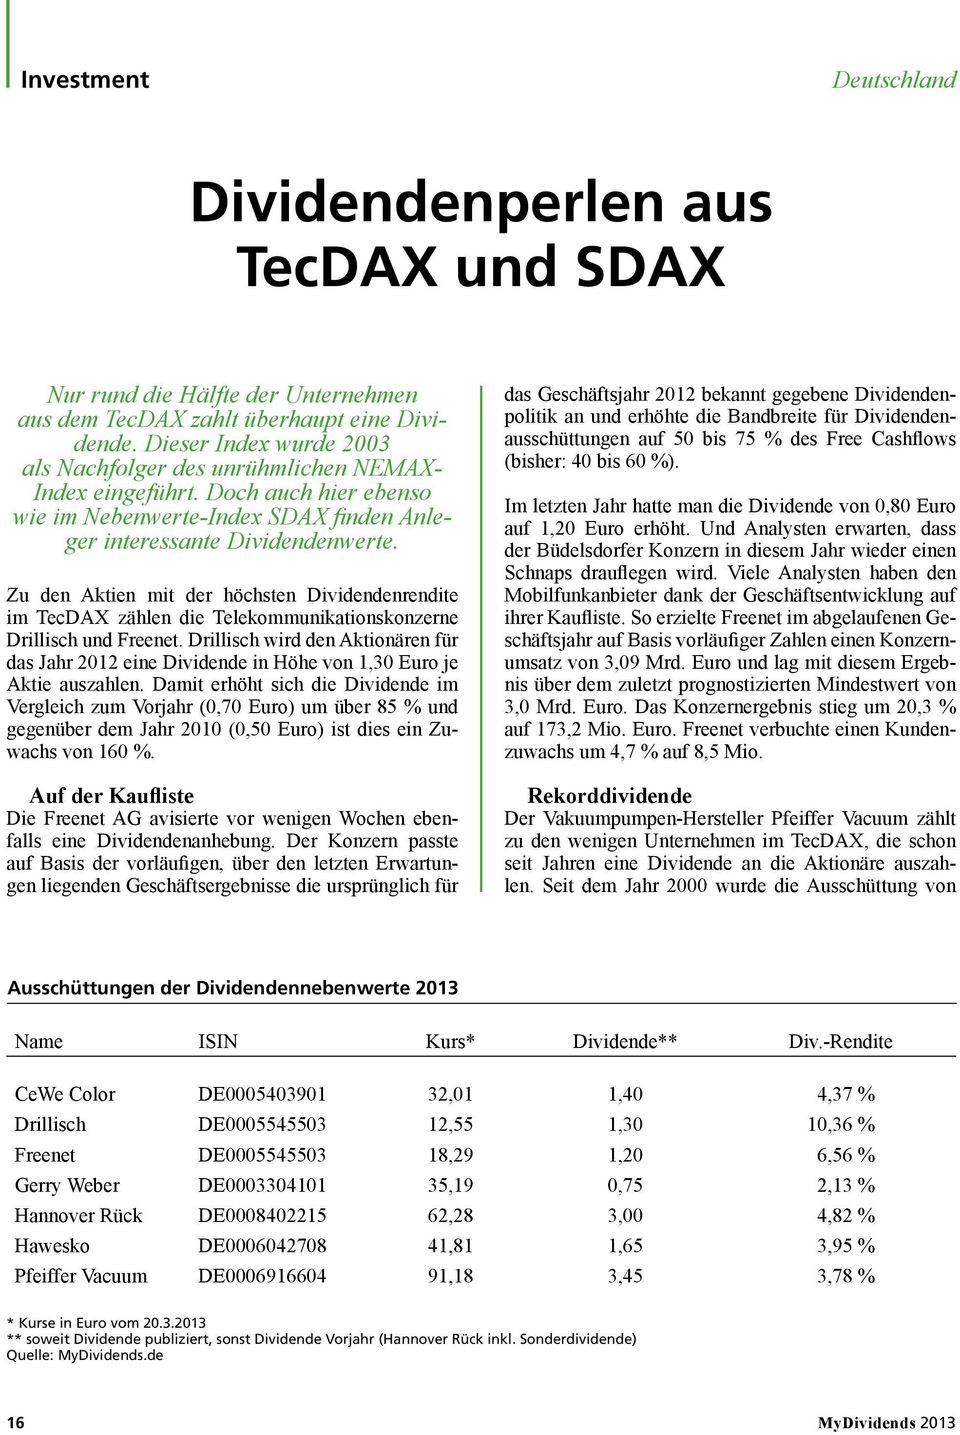 Zu den Aktien mit der höchsten Dividendenrendite im TecDAX zählen die Telekommunikationskonzerne Drillisch und Freenet.